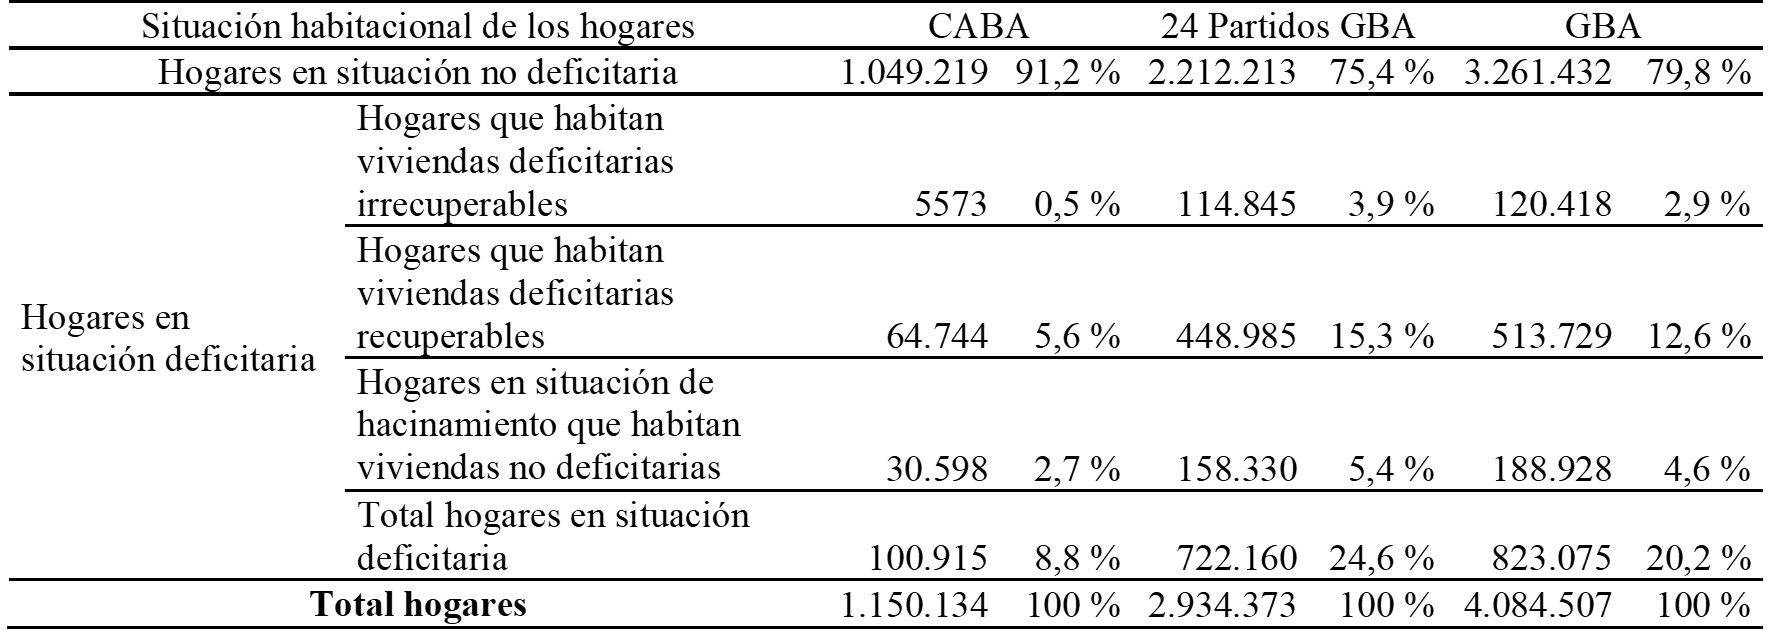 Distribución de los hogares según su situación habitacional. Total CABA, 24 partidos del GBA, GBA, 2010